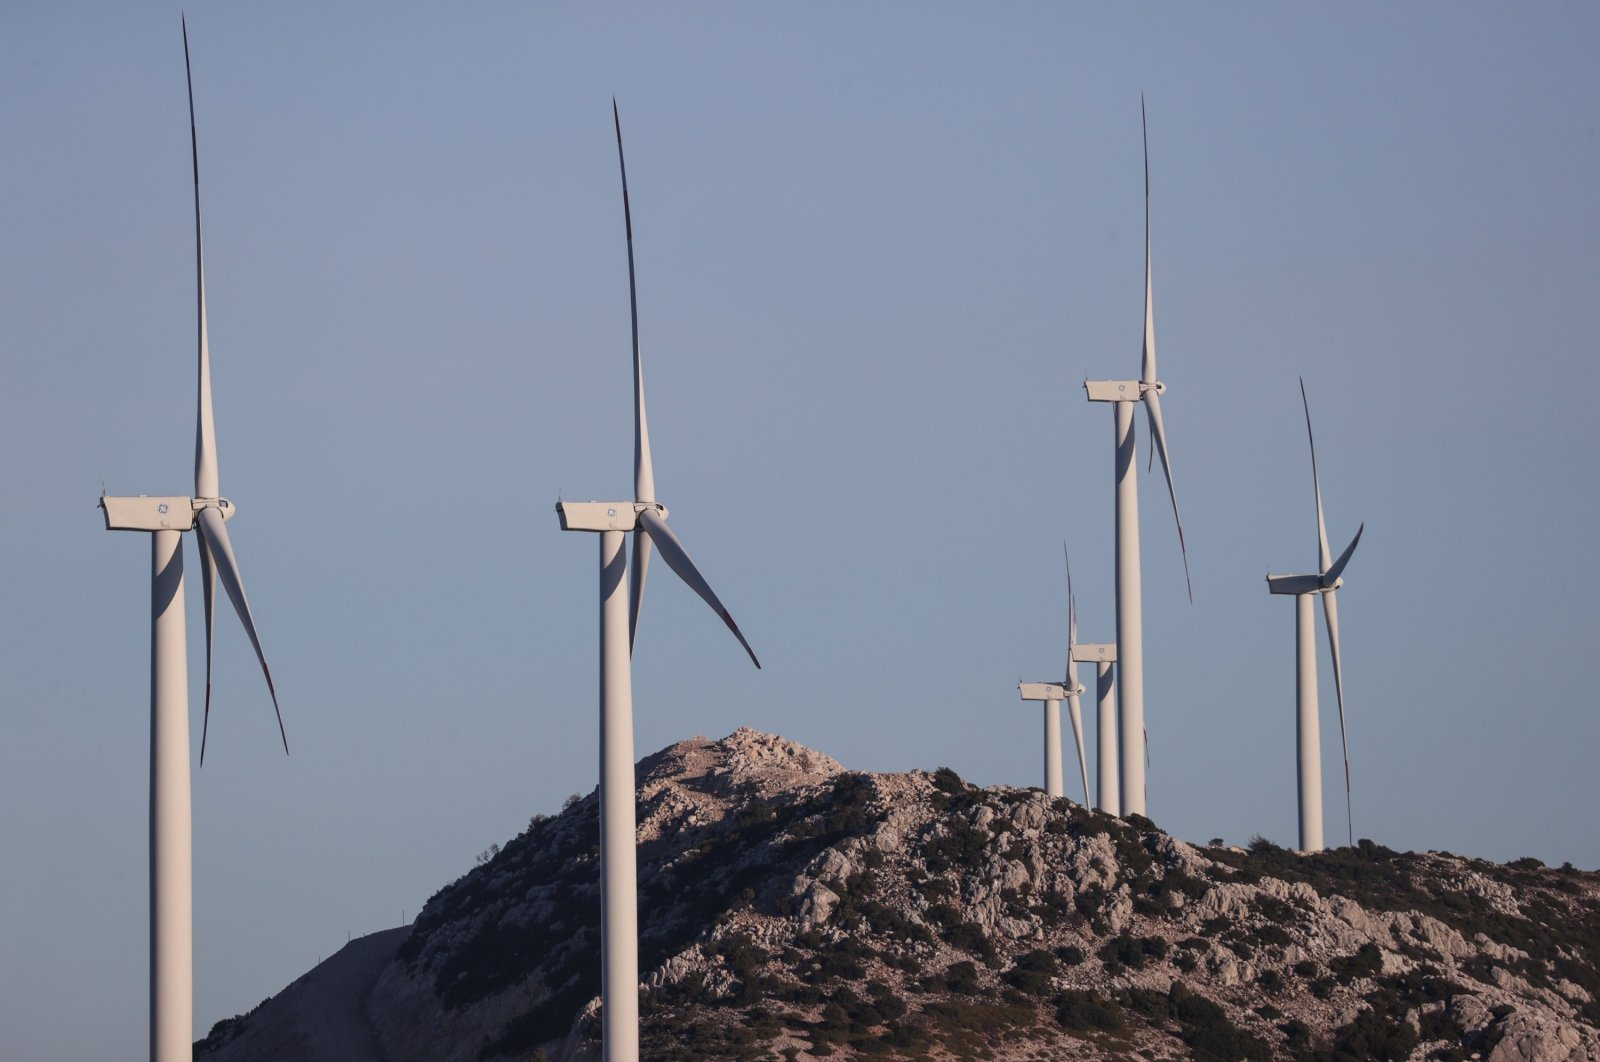 Turki meningkatkan kapasitas energi angin dan surya untuk pembangkit listrik